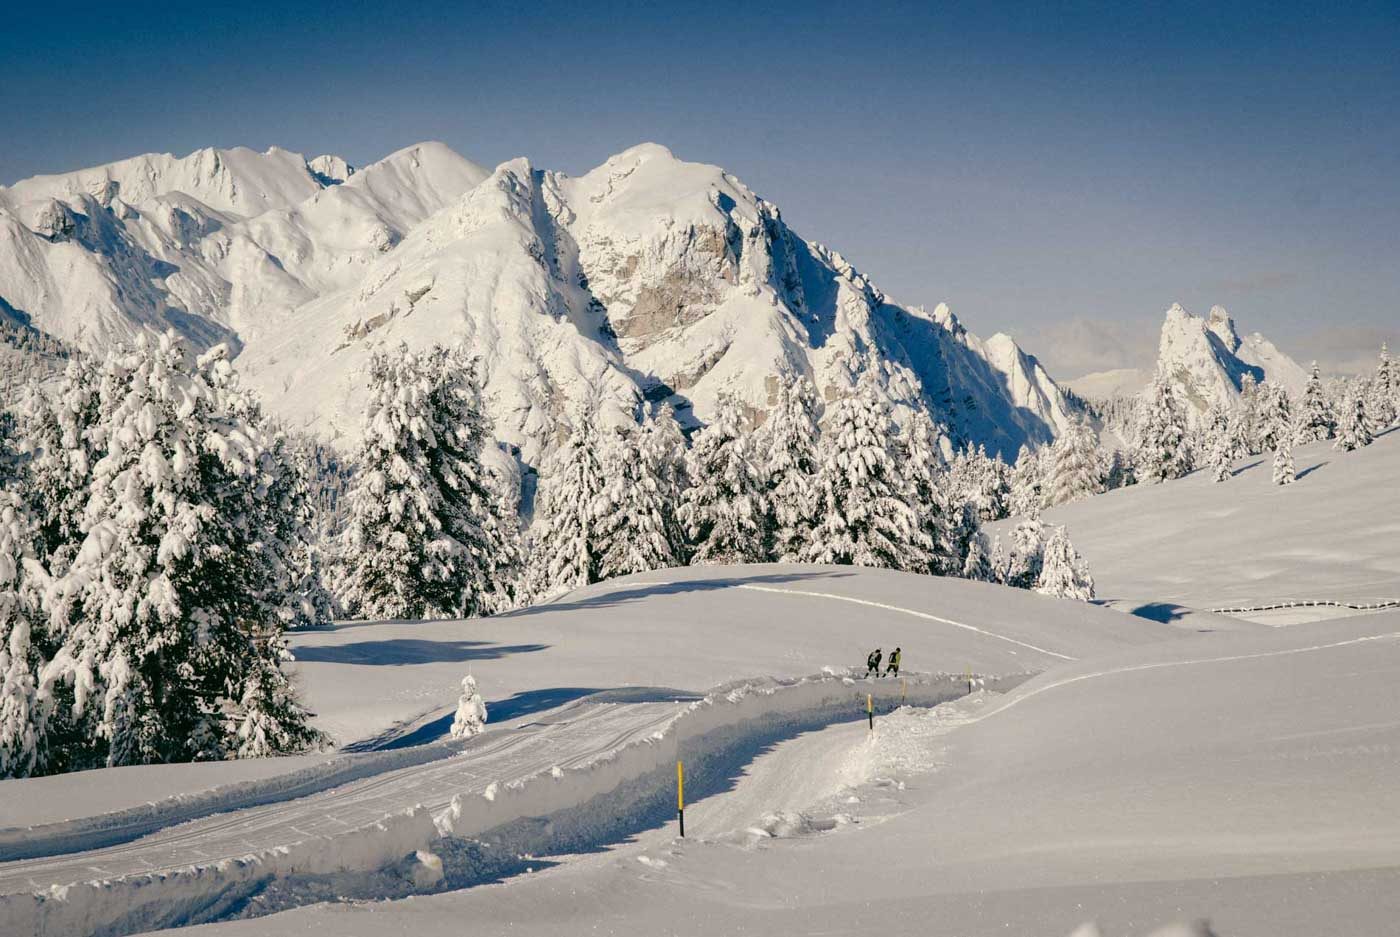 Skilangläufer auf Loipe auf Plätzwiese Dolomiten